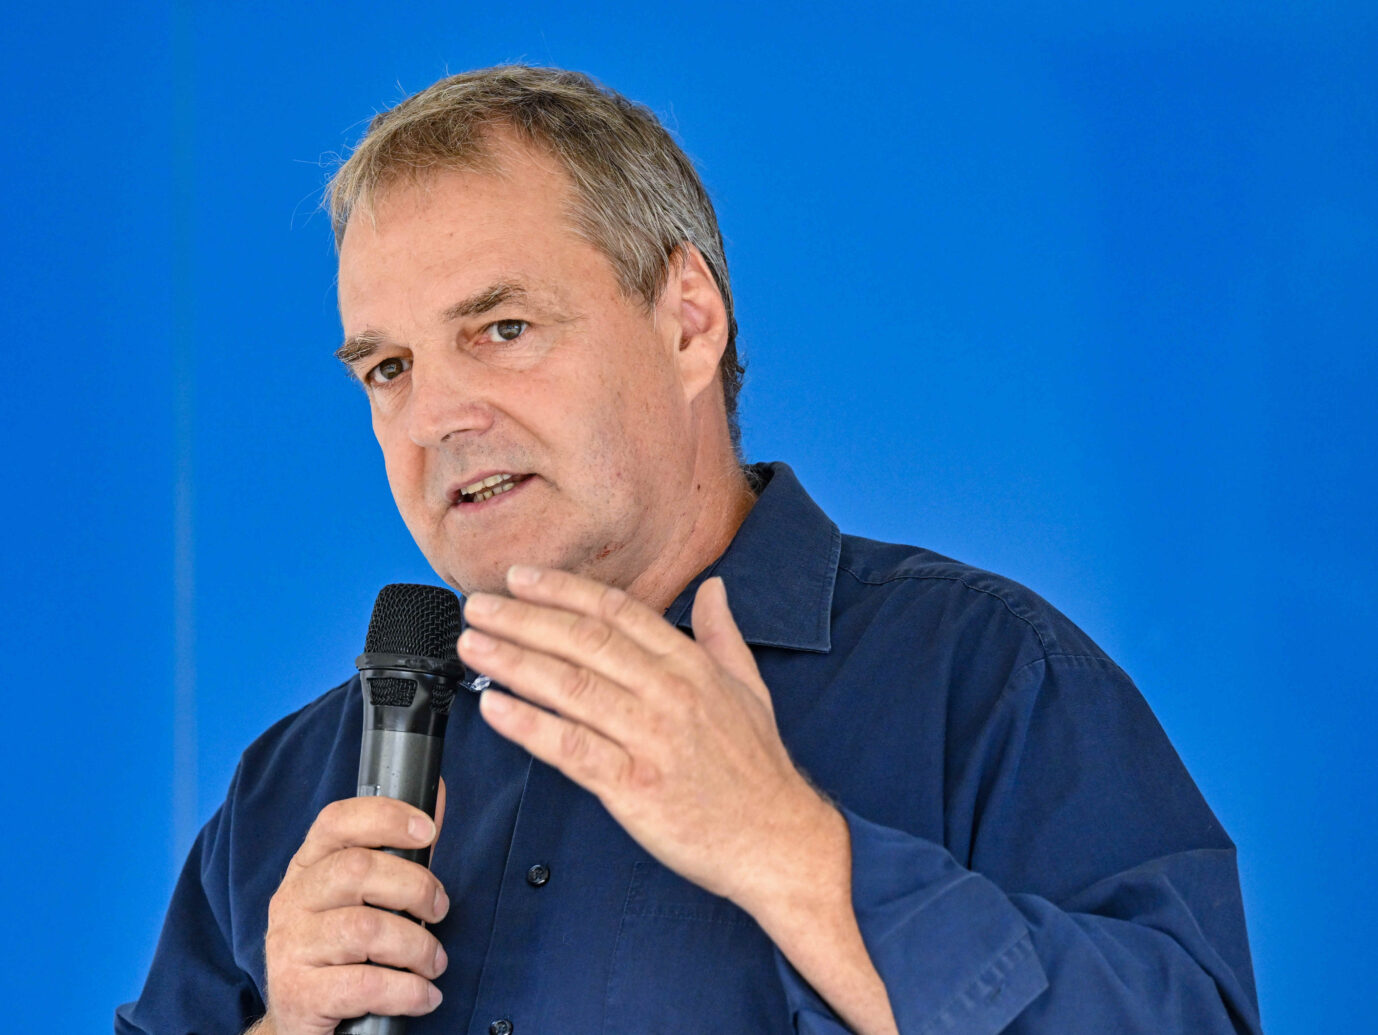 Falk Janke von der AfD Märkisch-Oderland verliert die Wahl zum Bürgermeister in Seelow, Brandenburg: Er sieht das auch als Folge von gestreuten Gerüchten über ihn Foto: picture alliance/dpa | Patrick Pleul